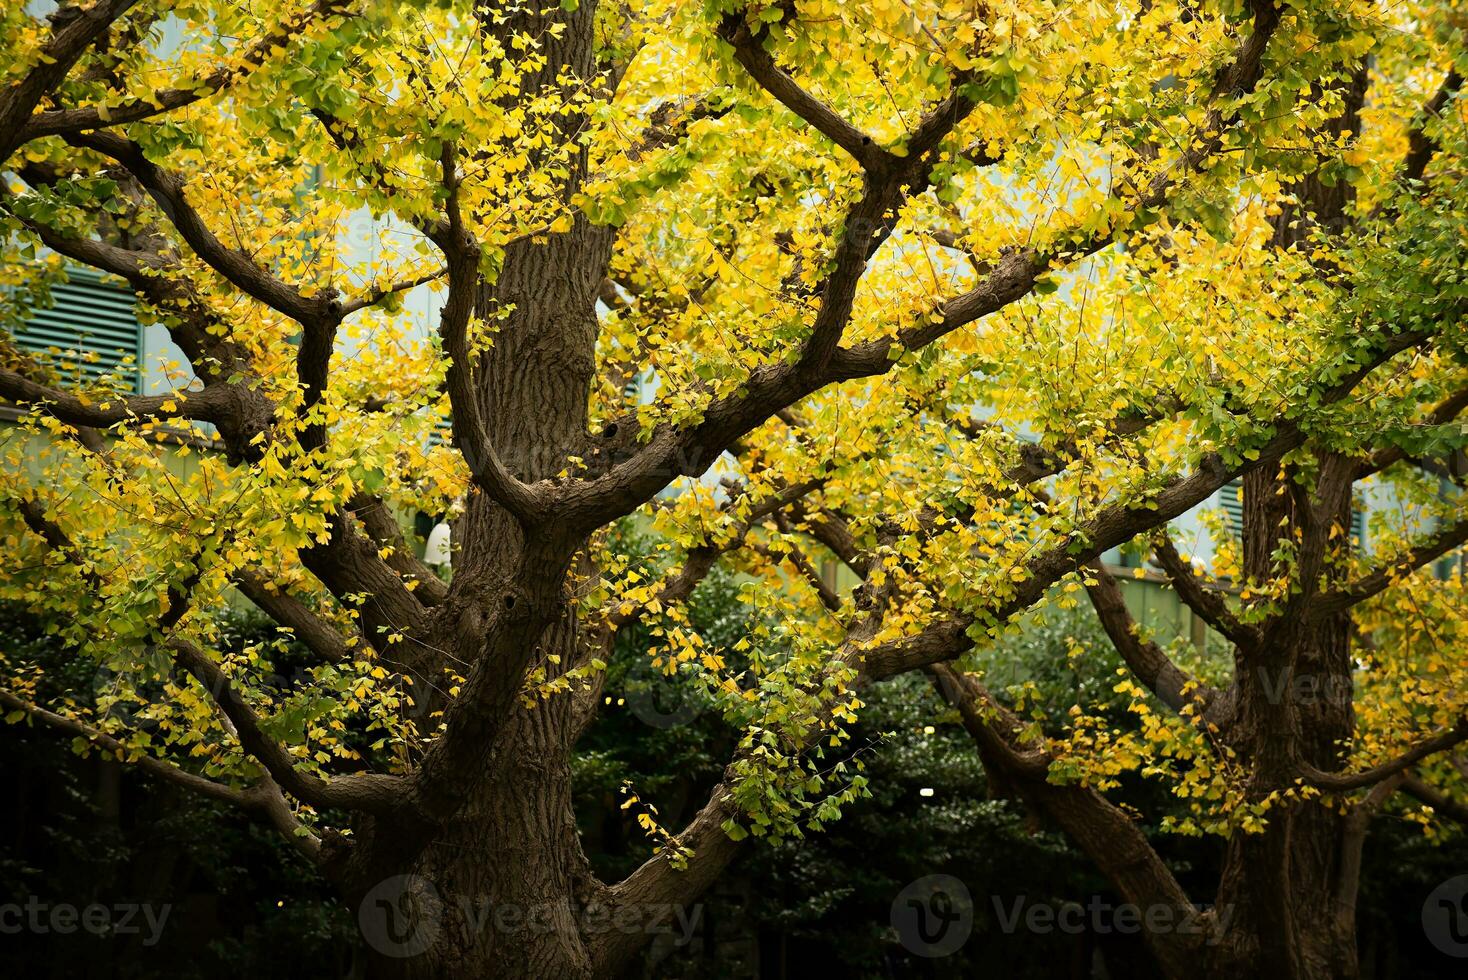 árvore de bordo no outono foto